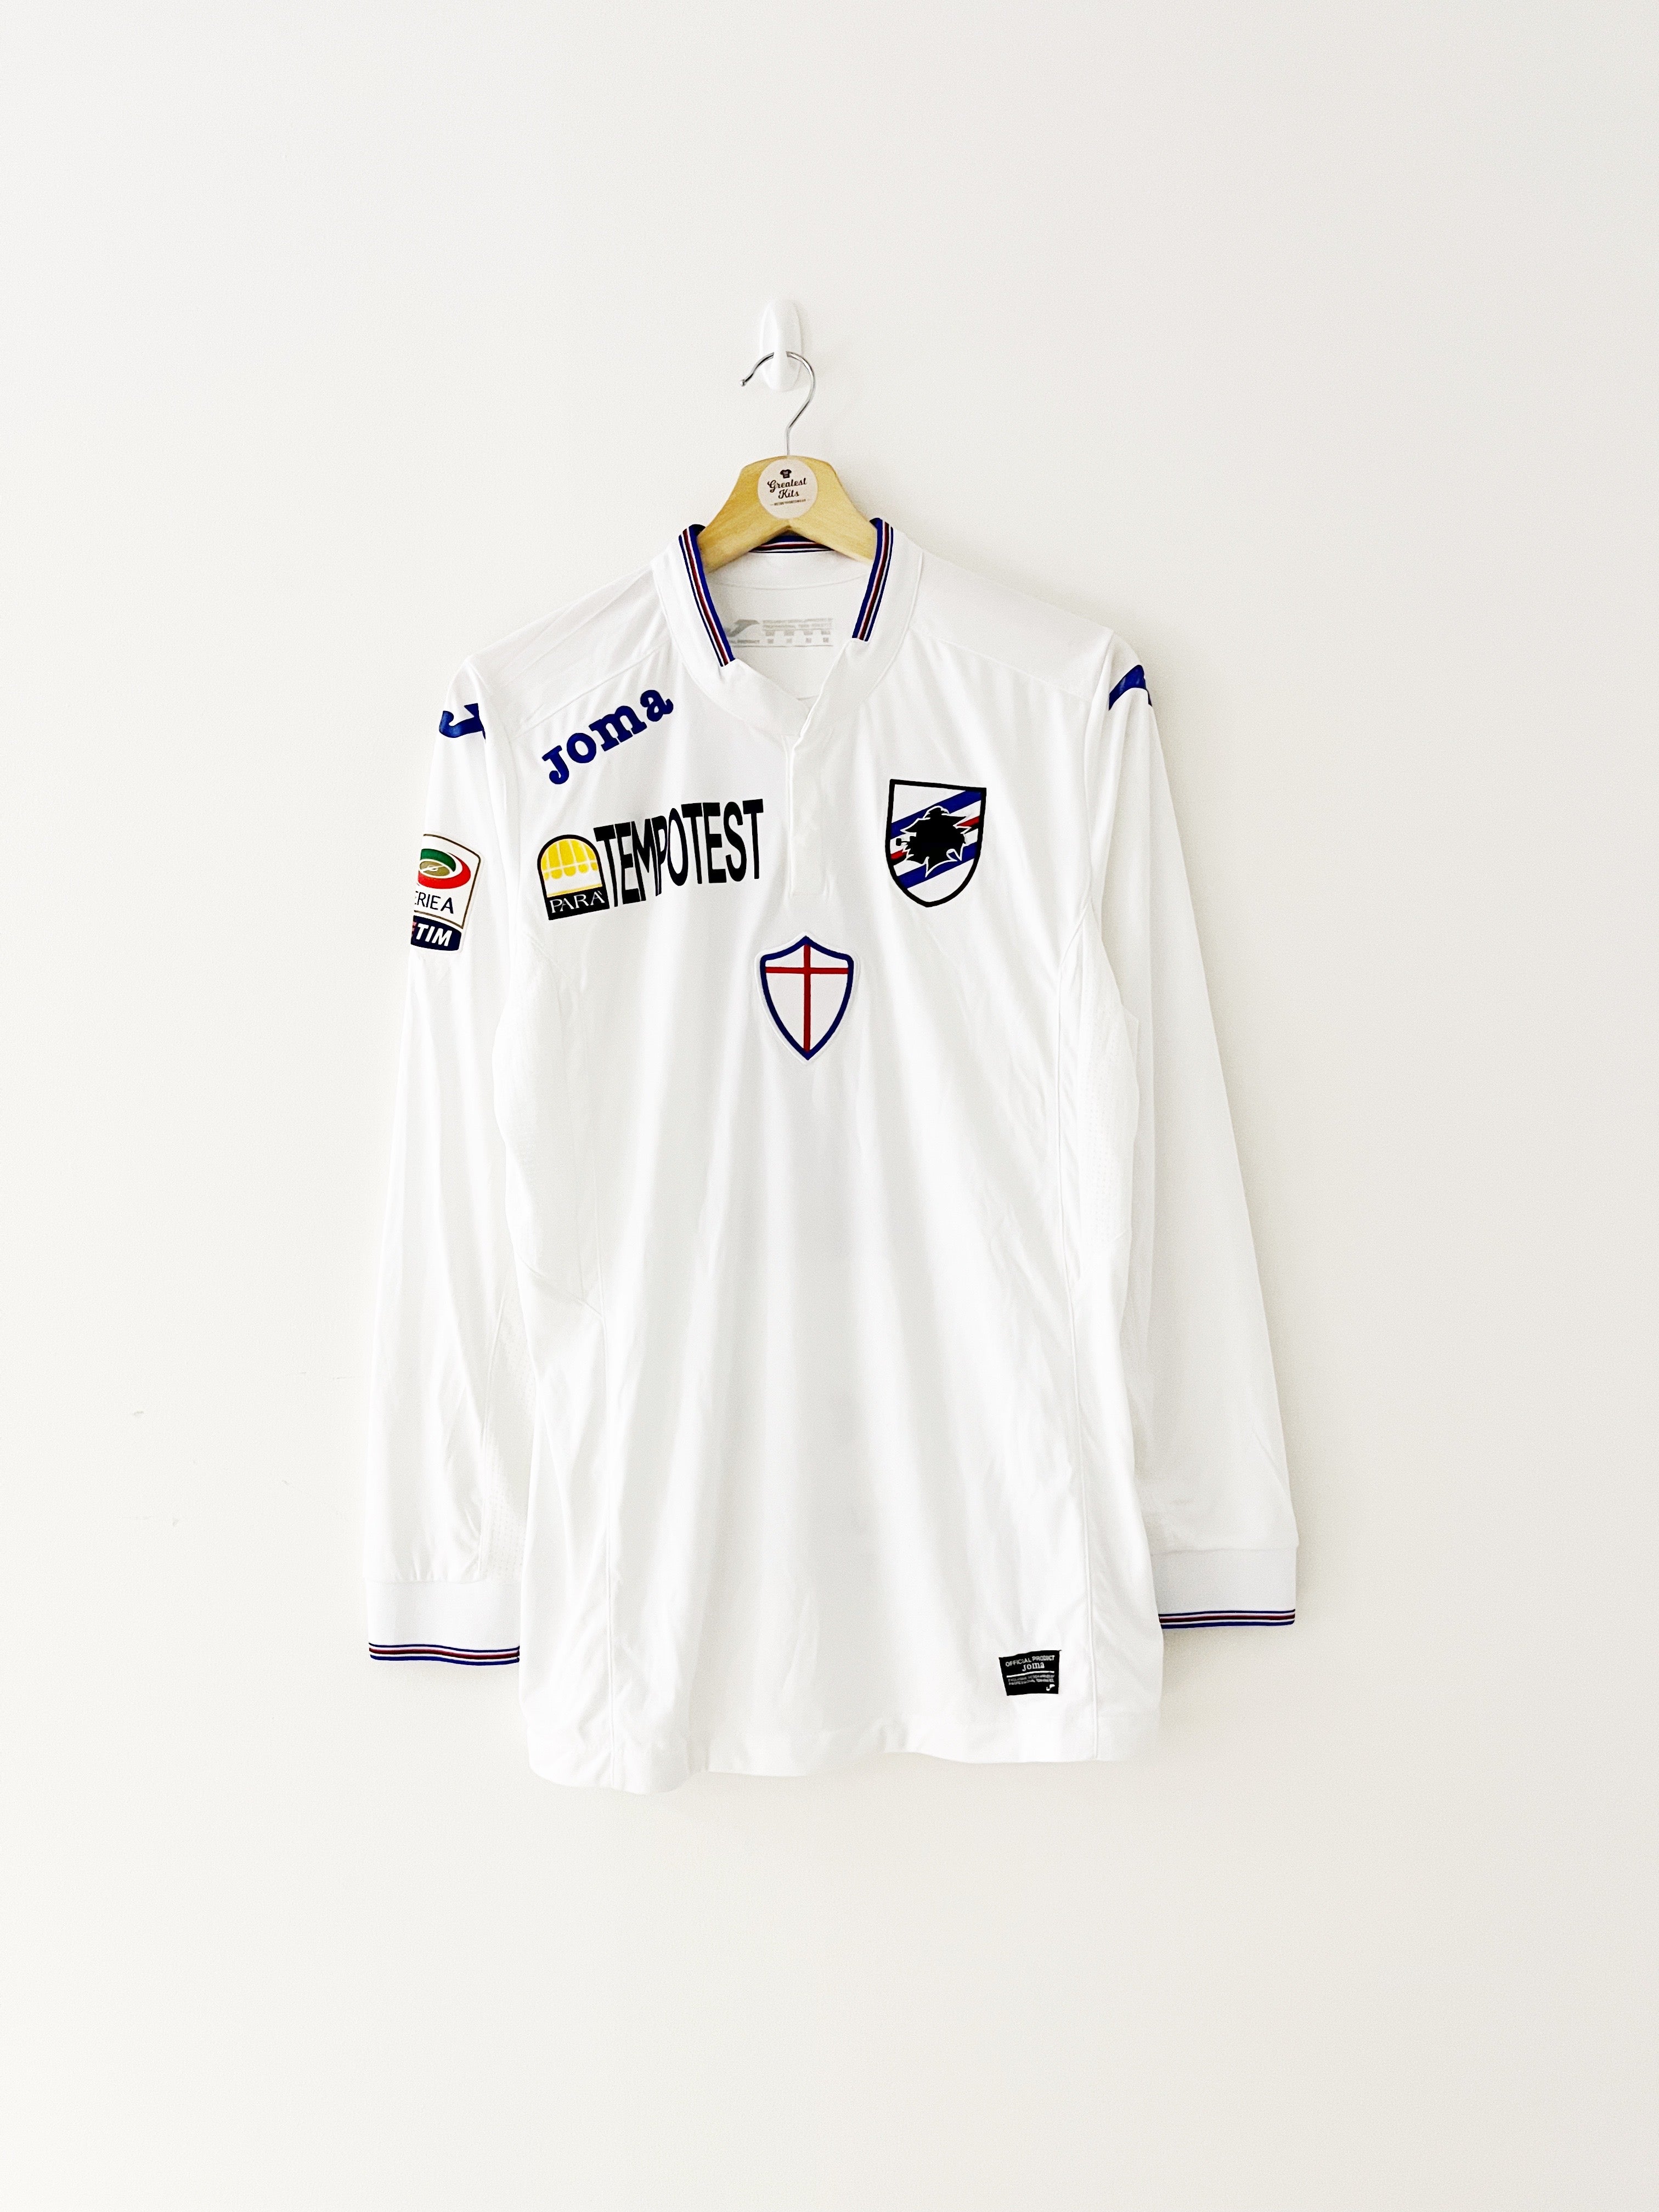 2015/16 Sampdoria *Edición del jugador* Camiseta GK Viviano #2 (M) 9/10